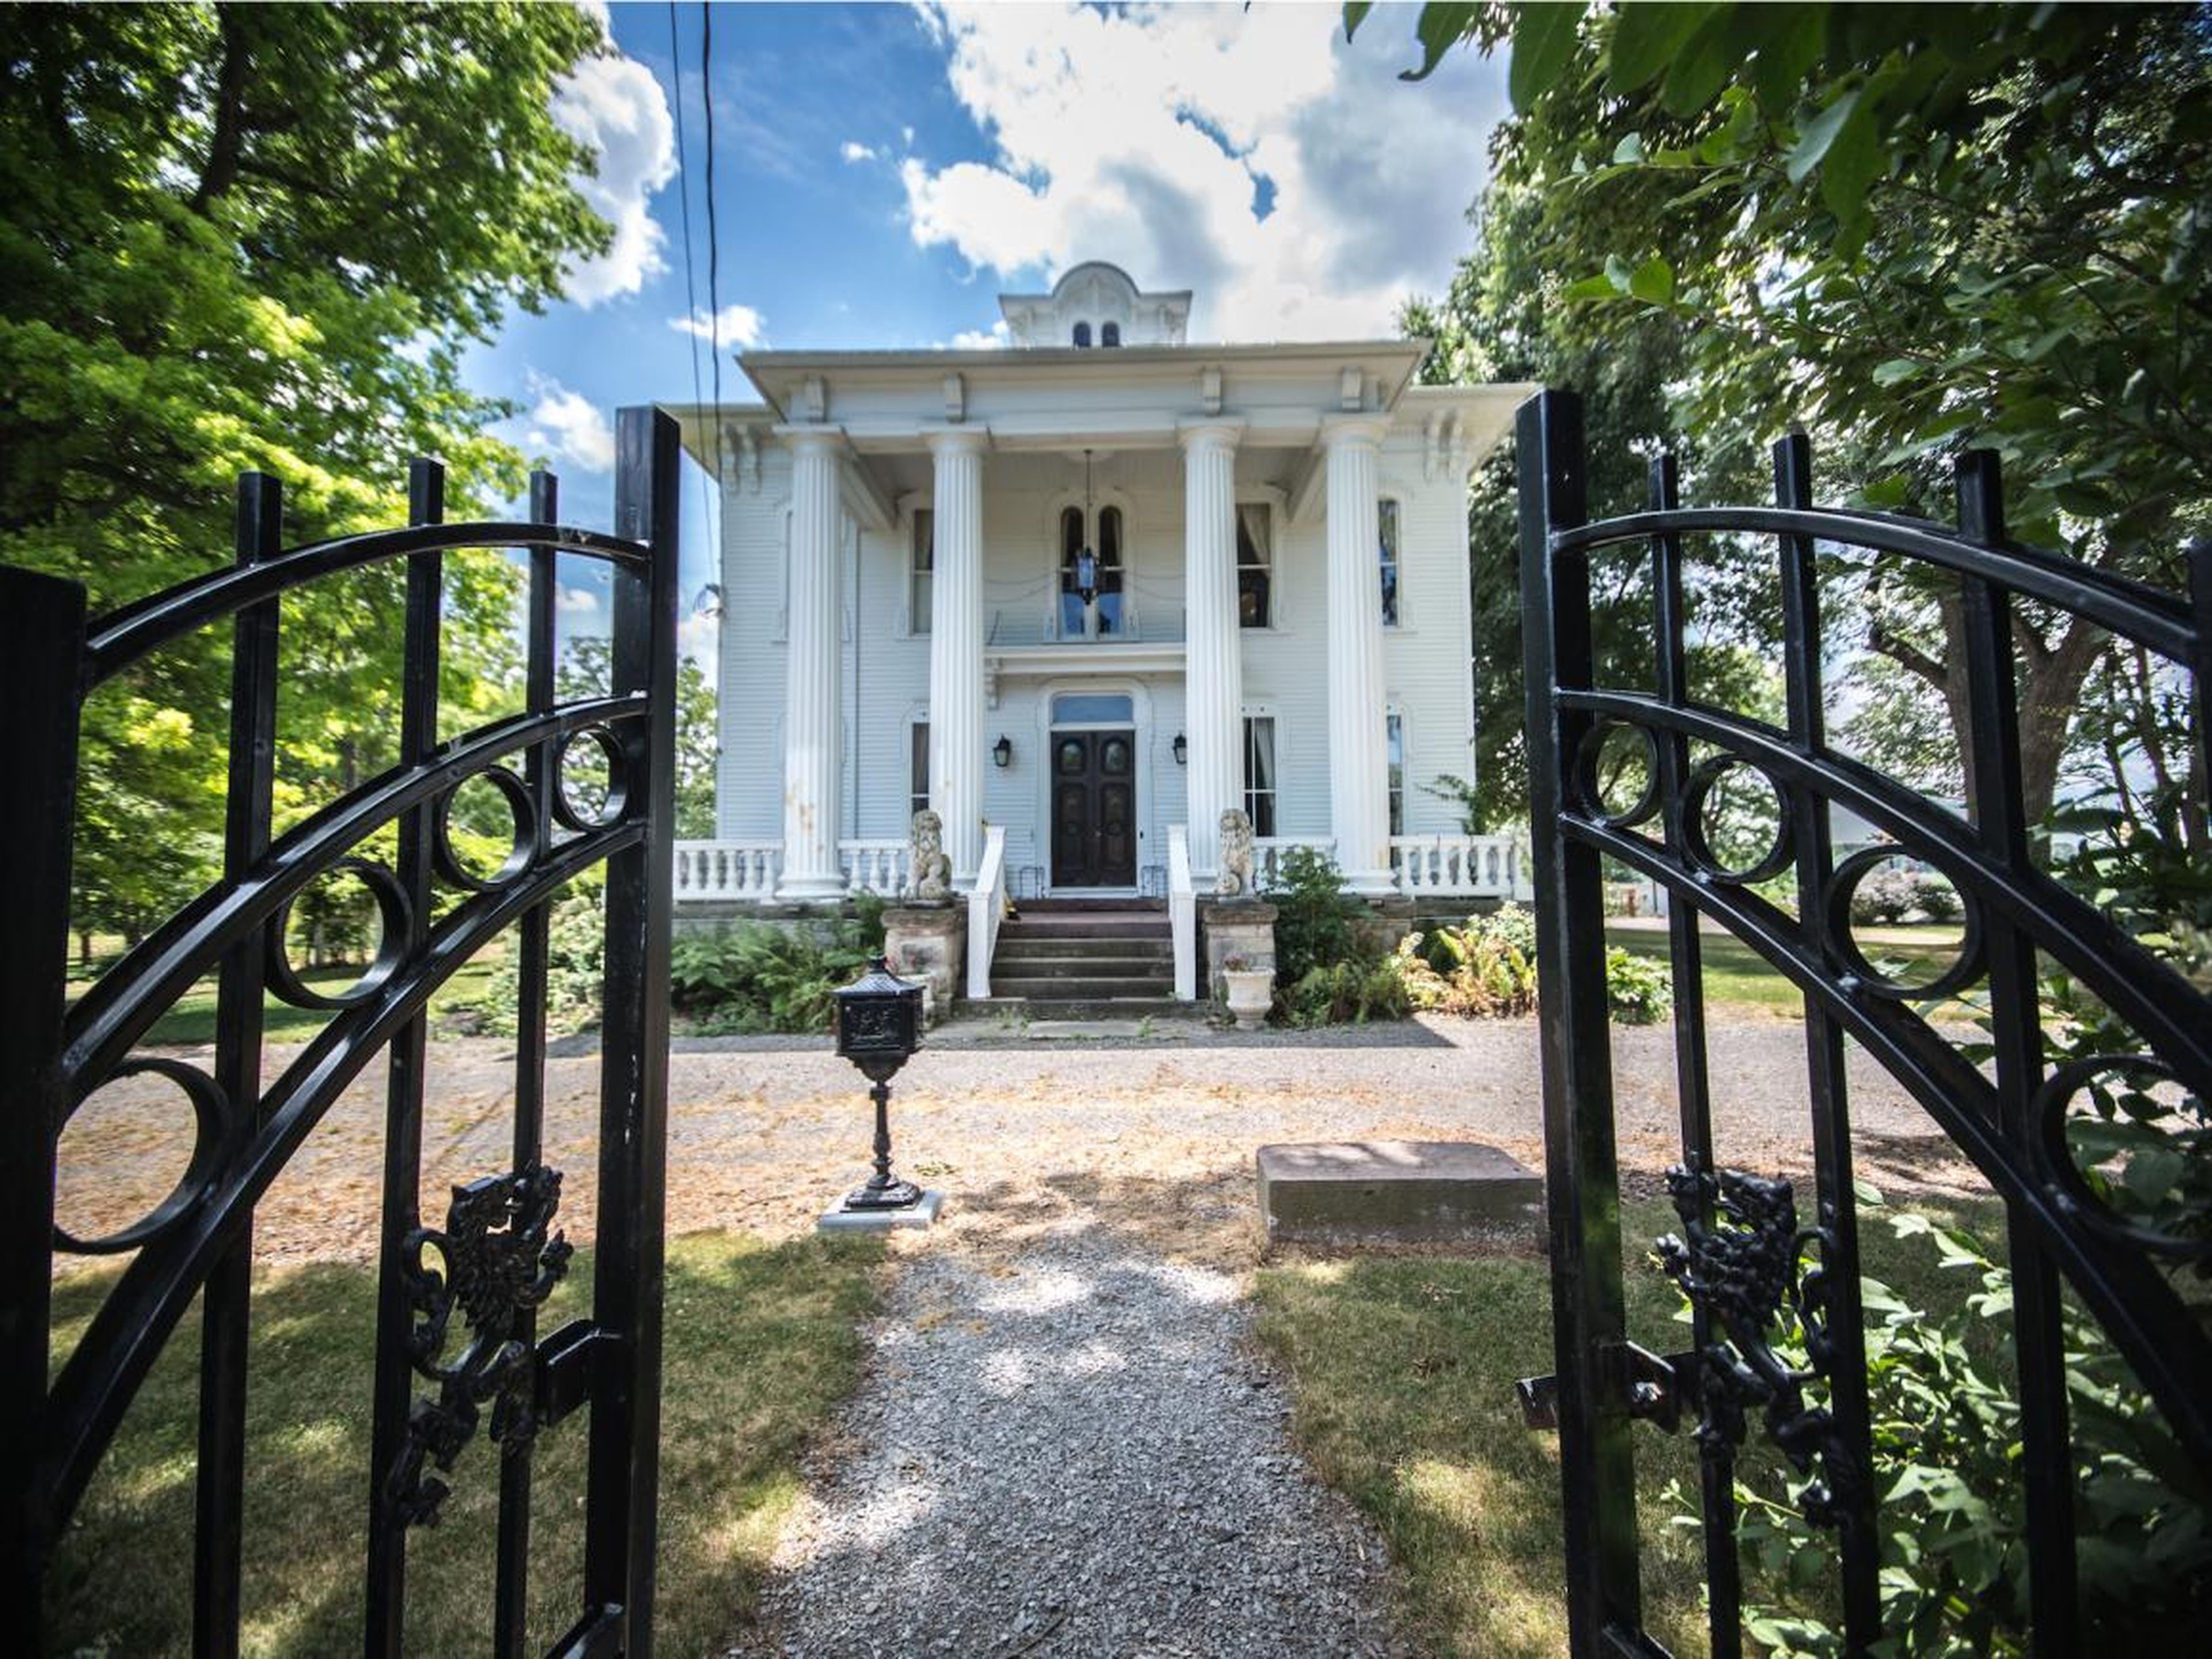 Con actividades paranormales o no, esta magnífica casa, a la venta por 450.000 dólares, es una gran oportunidad, cuesta menos de la mitad del precio original.